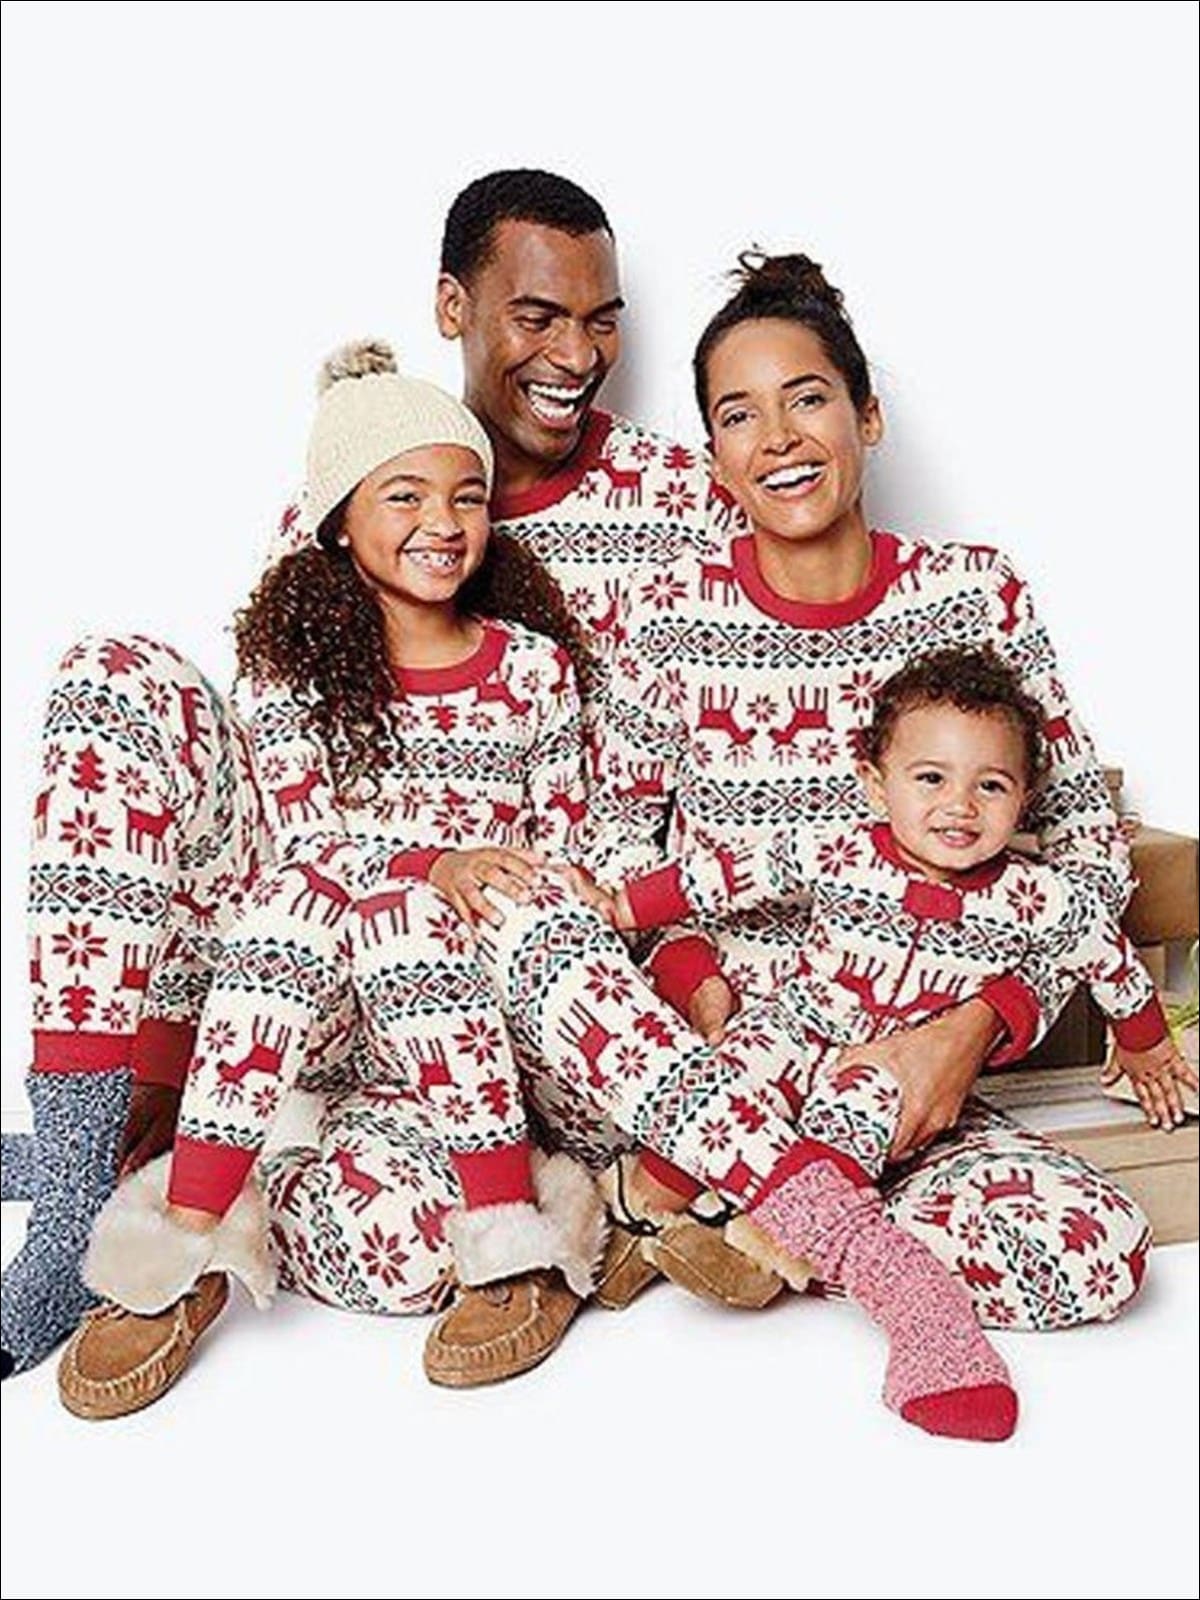 Family Christmas Pajamas Set  Long Sleeve Winter Reindeer Pajamas